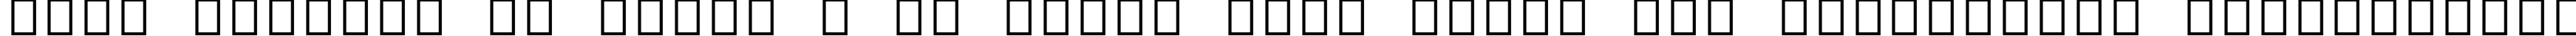 Пример написания шрифтом Arial Alternative Symbol текста на украинском